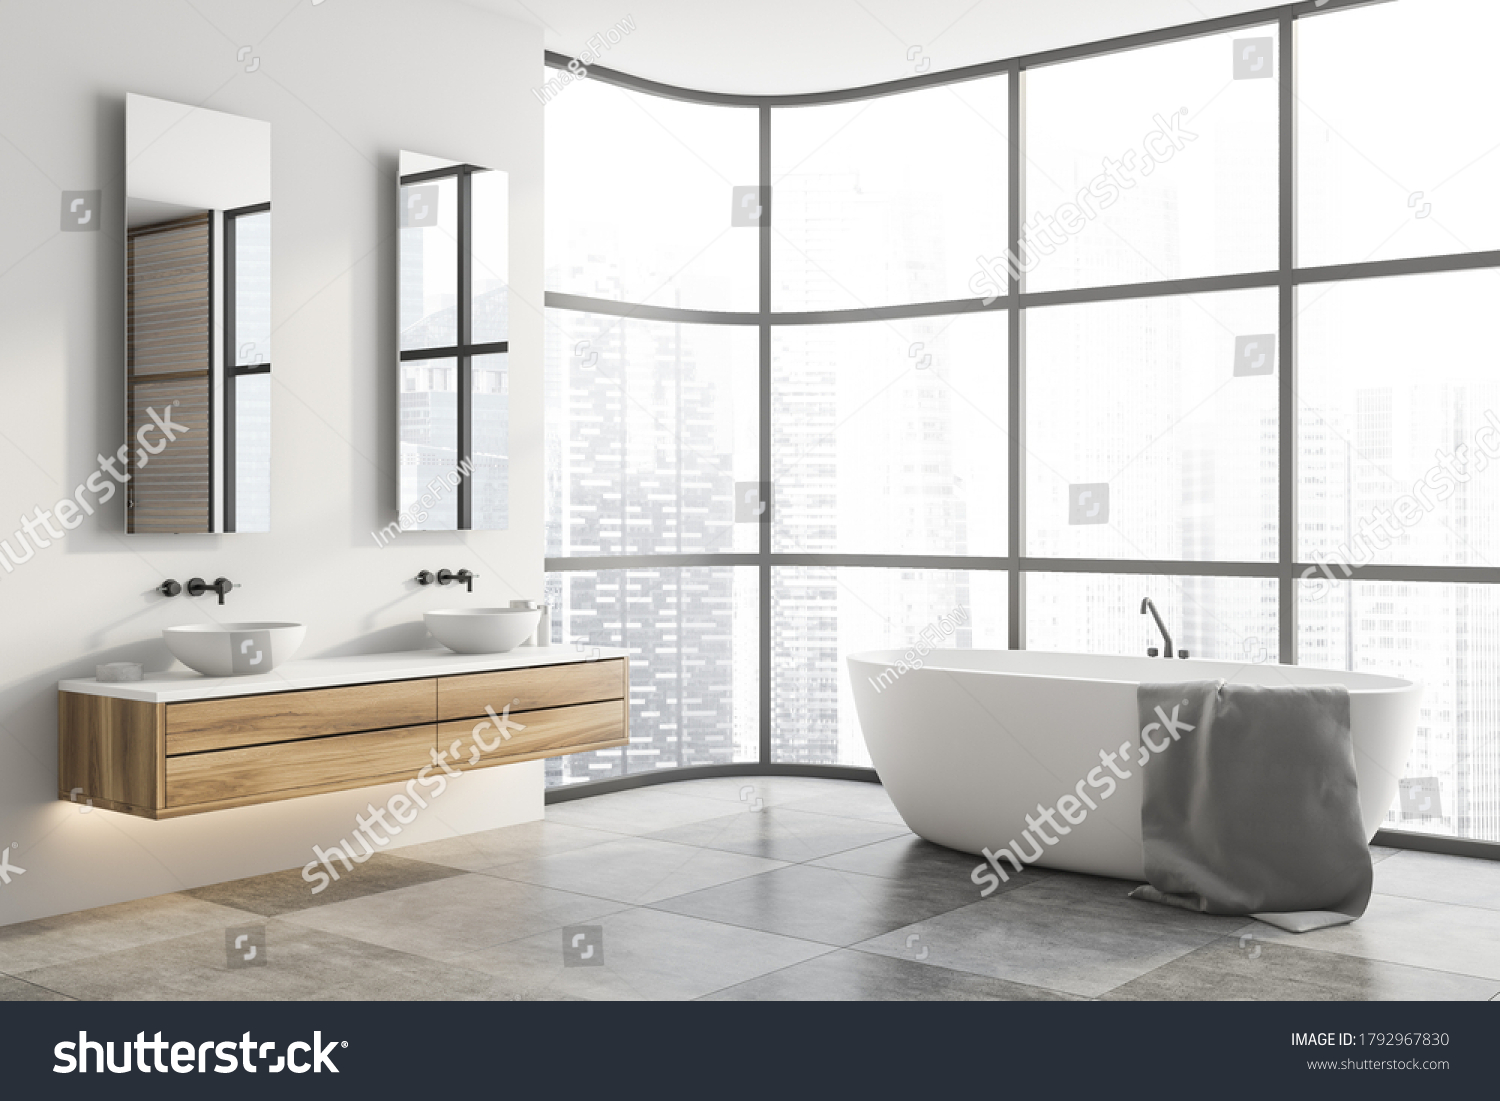 961 Double sink vanity Images, Stock Photos & Vectors | Shutterstock